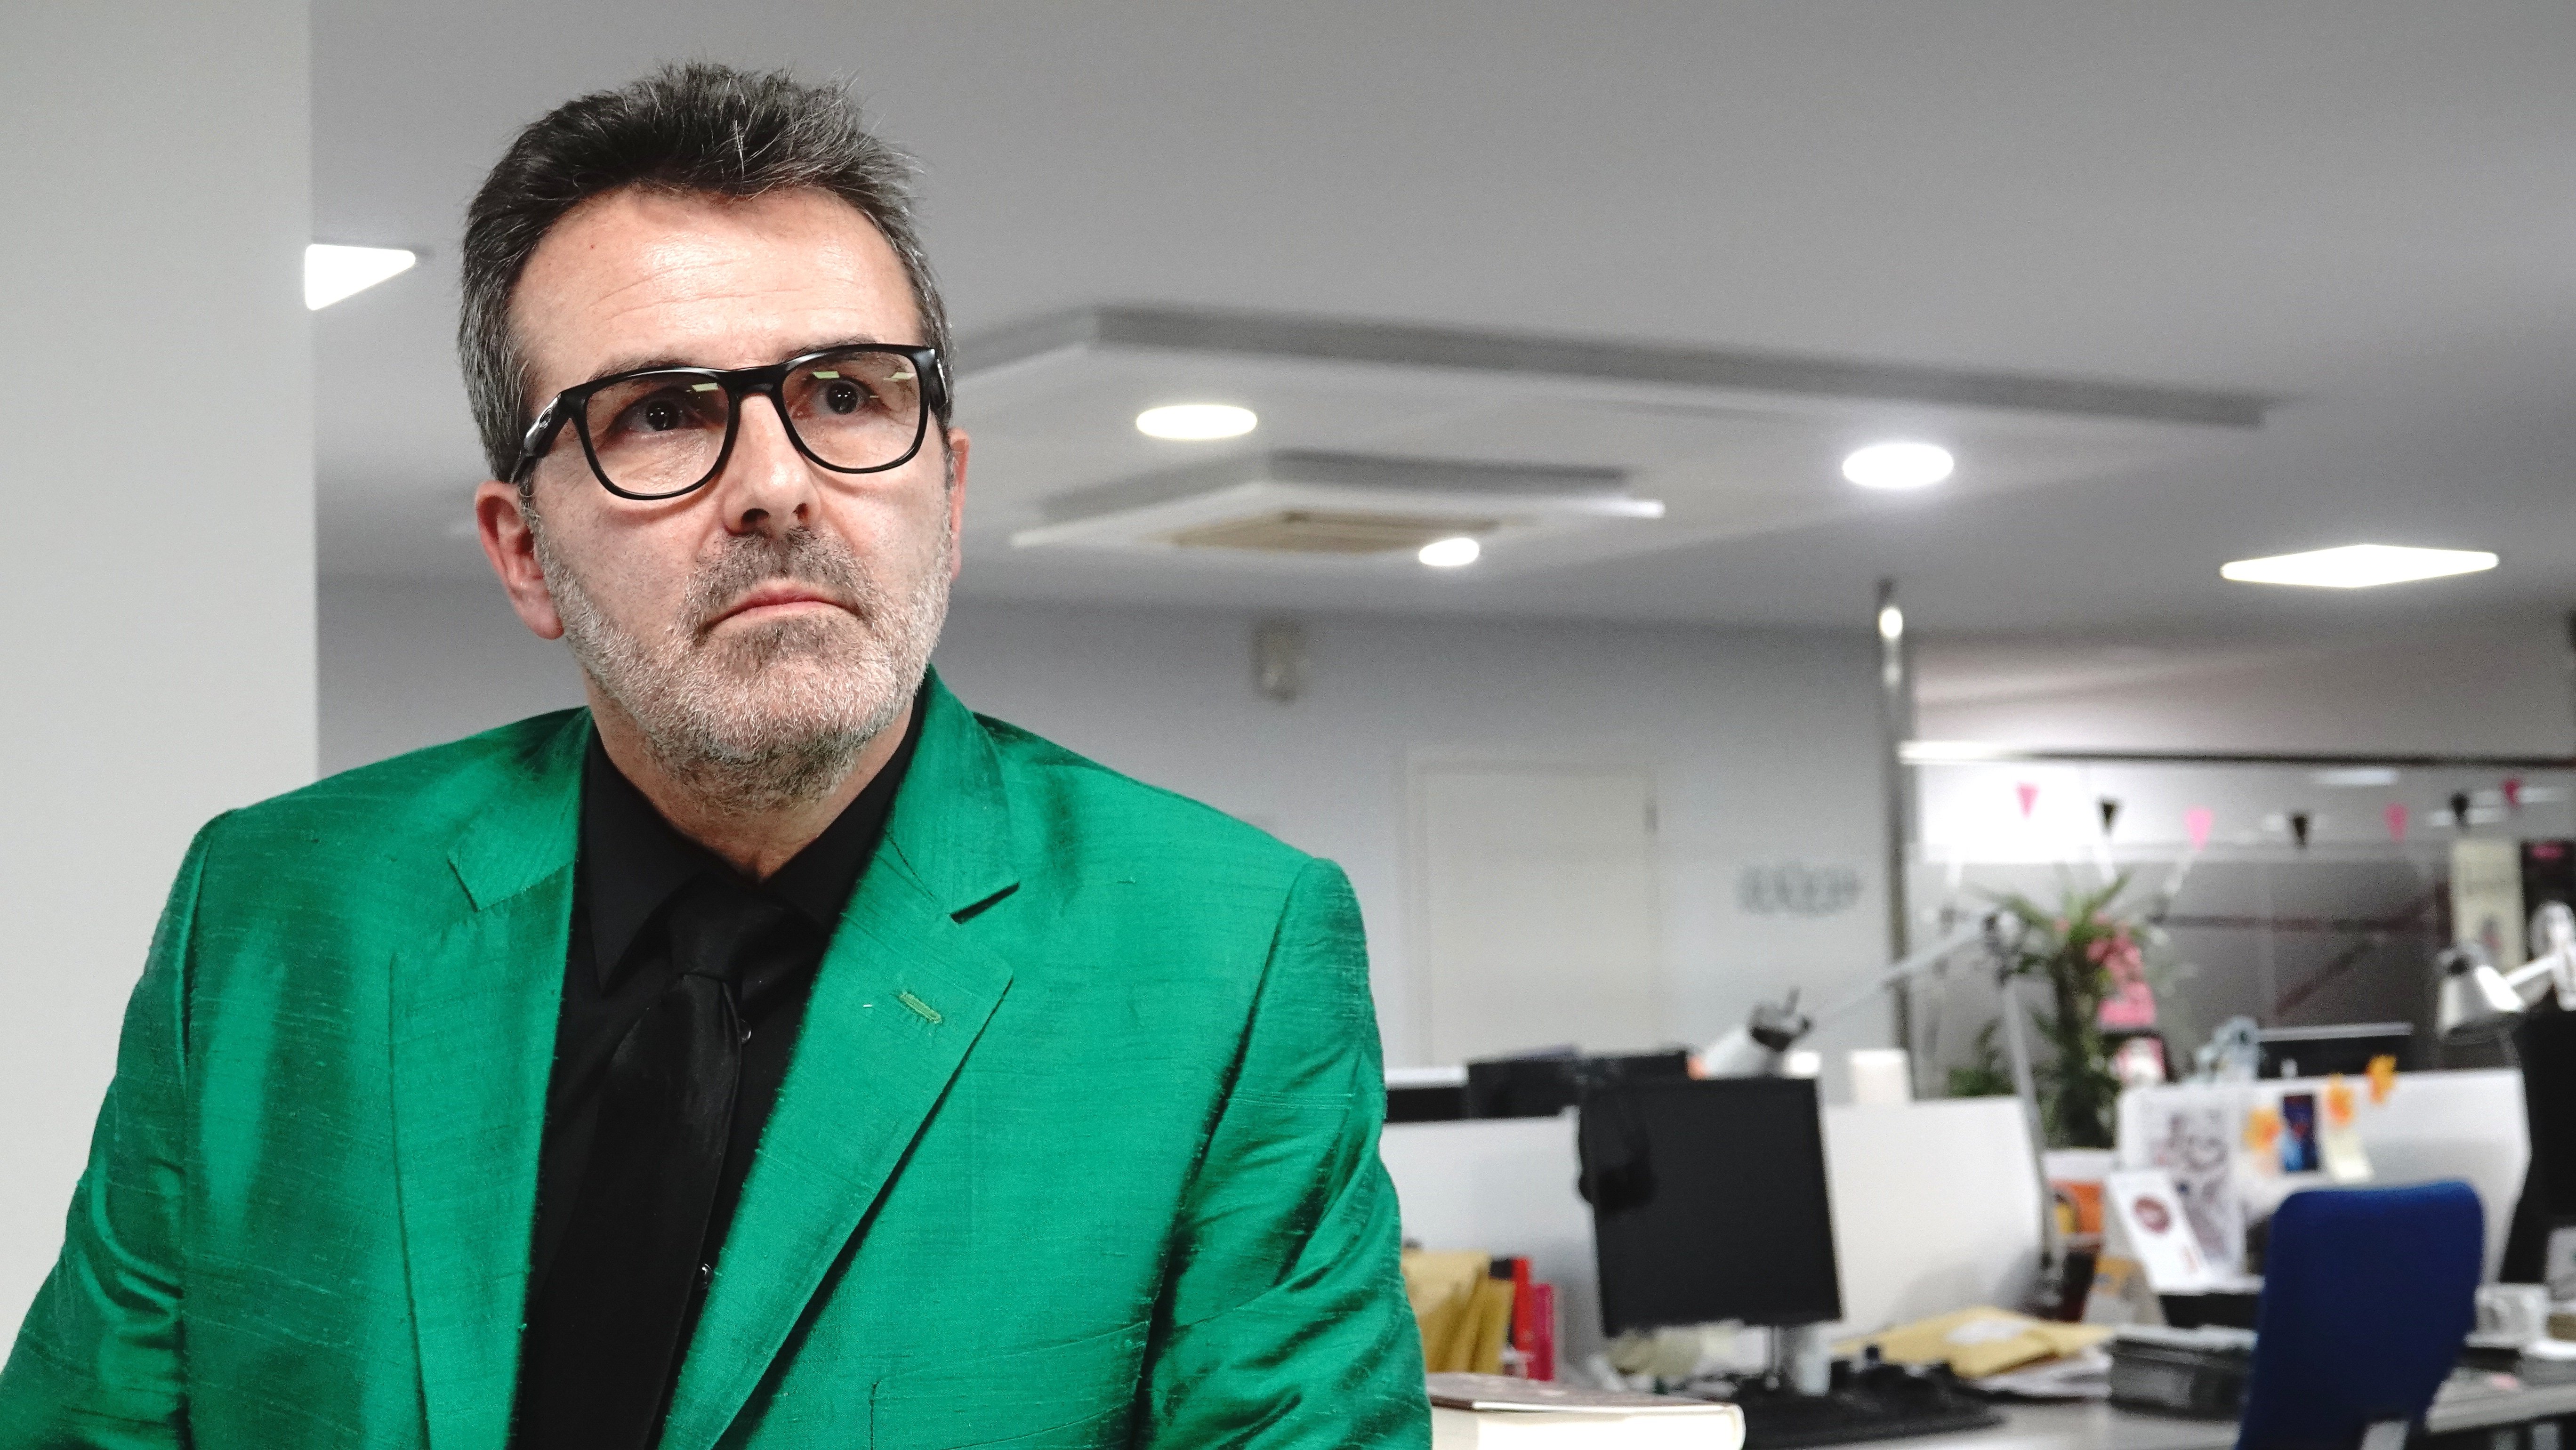 Sala-i-Martin repasa a un periodista catalán de TVE por "inventarse noticias"